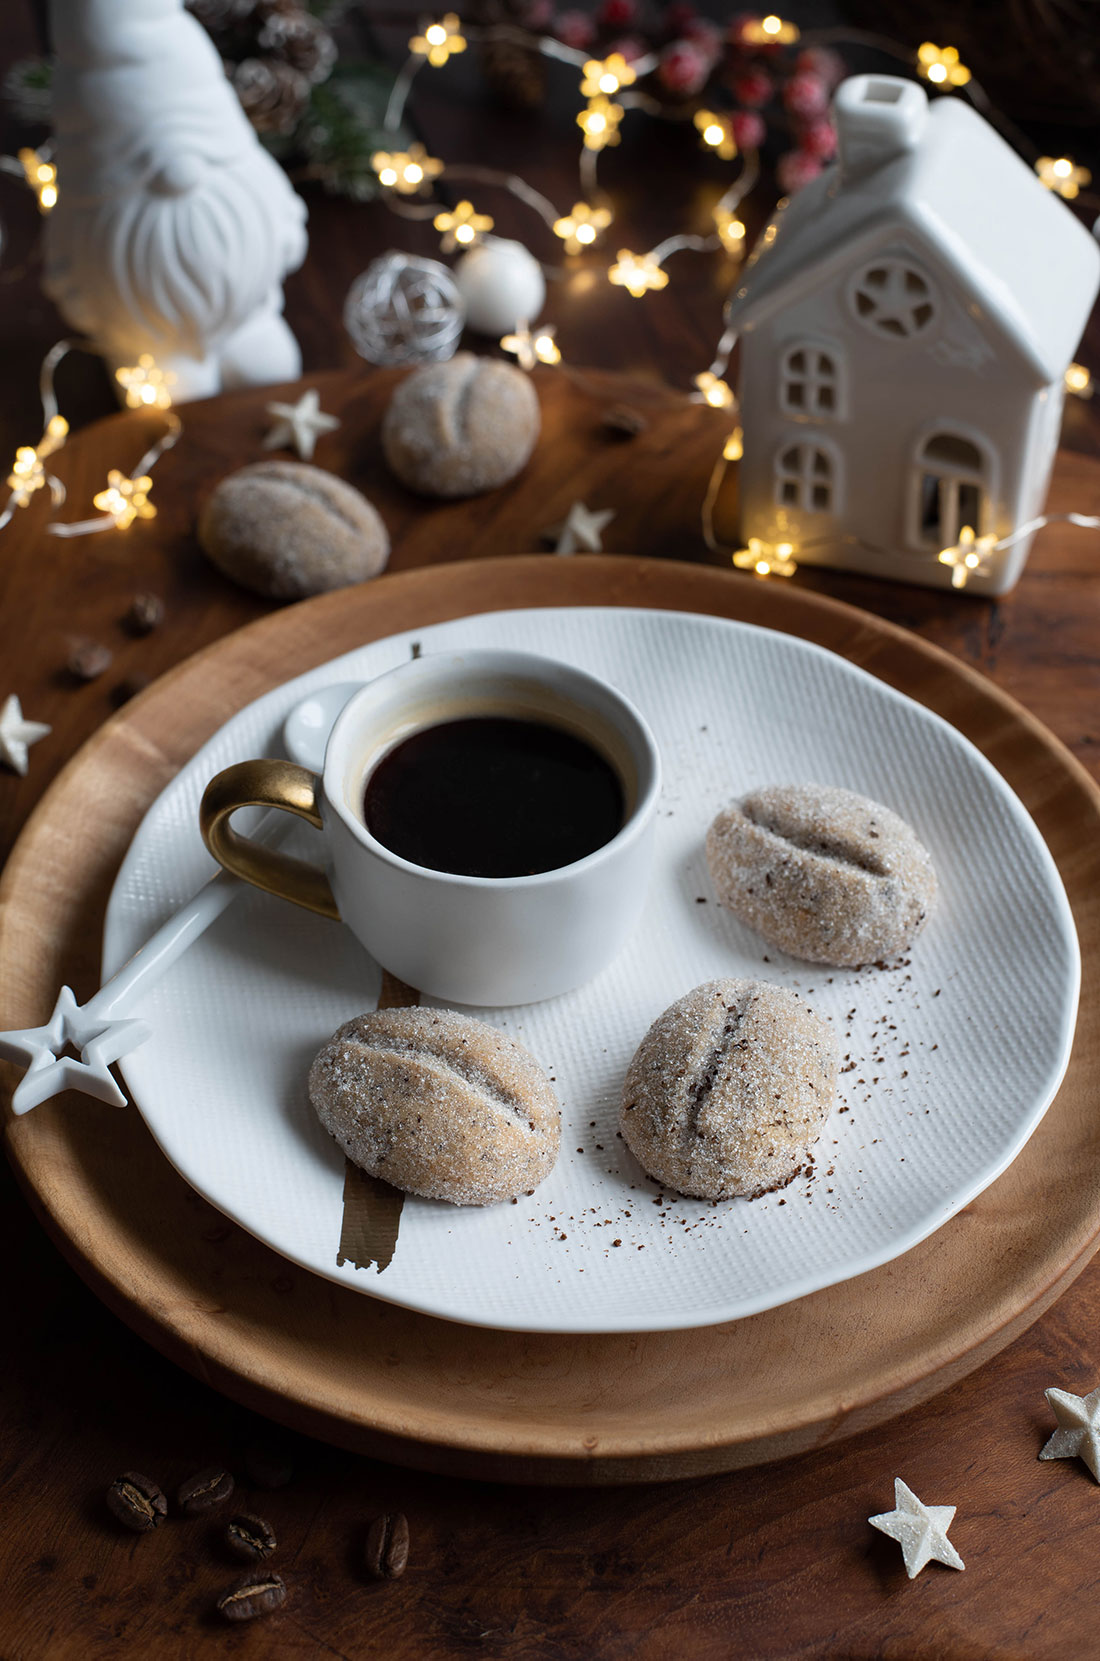 Recette de biscuits café kipferl pour préparer Noël